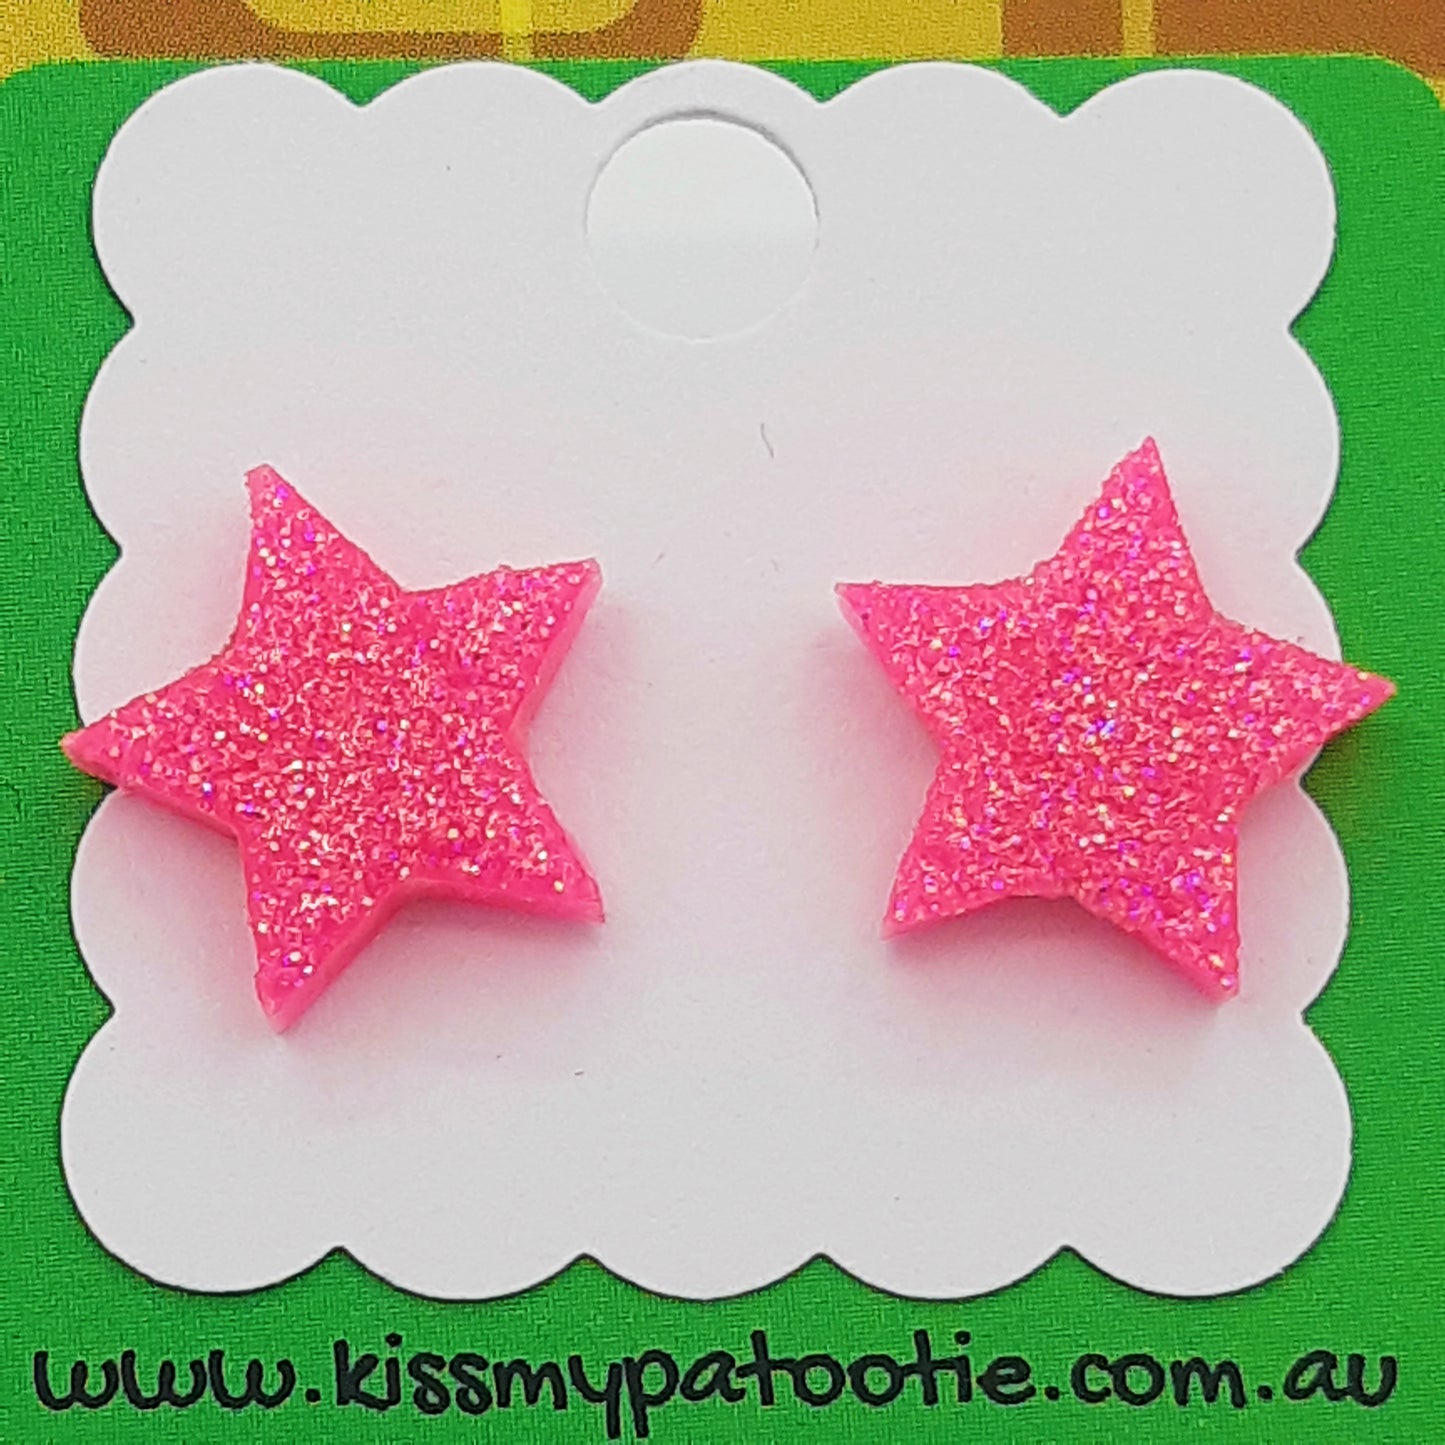 Glitter star laser cut acrylic earrings - hot pink